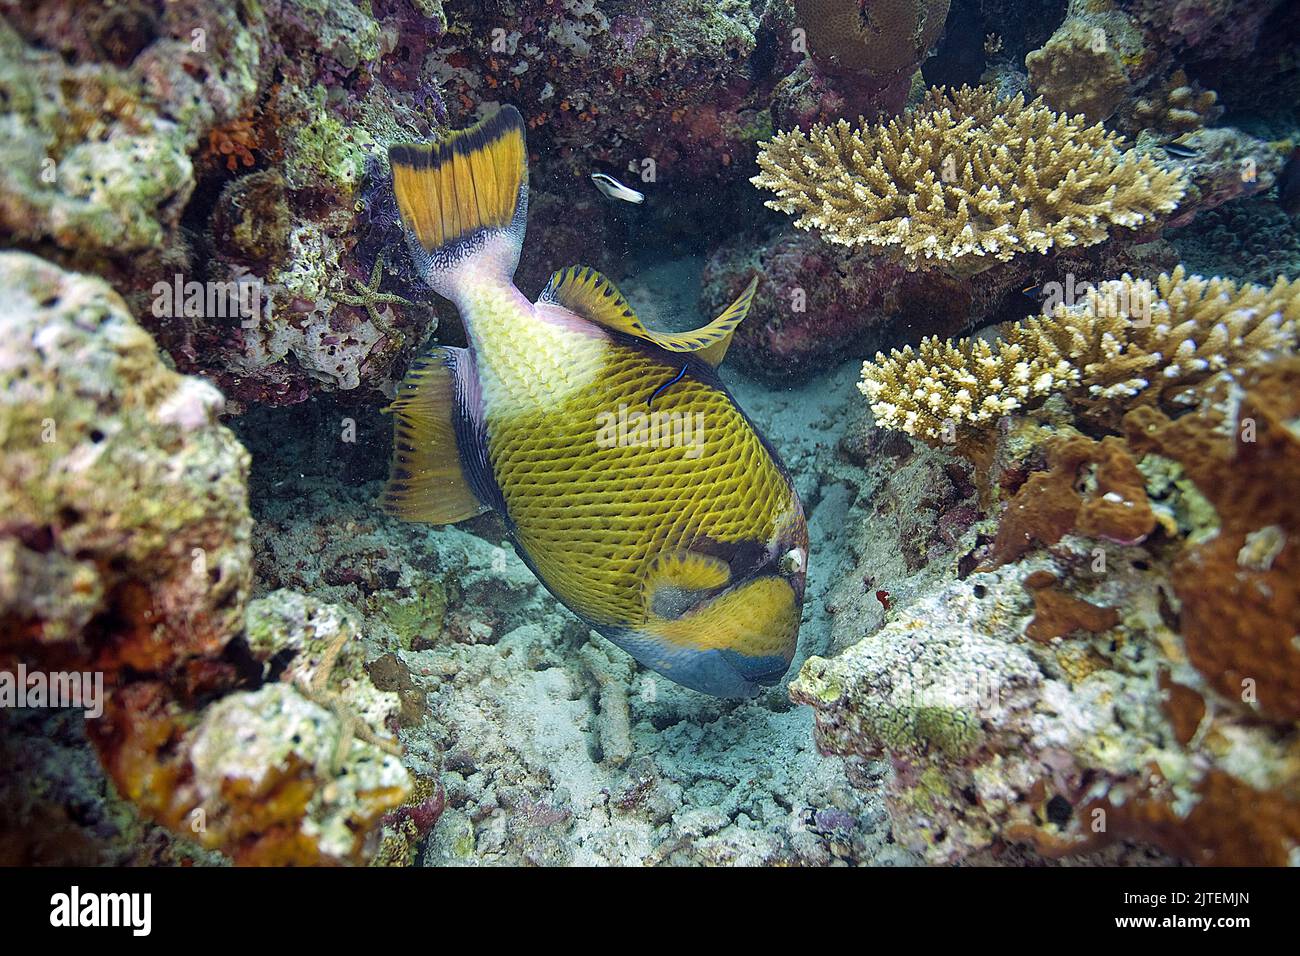 Pesce cavalcavia gigante o pesce cavalcavia (Balistoides viridens), coralli da nutrire, Atollo Sud-maschio, Maldive, Oceano Indiano, Asia Foto Stock